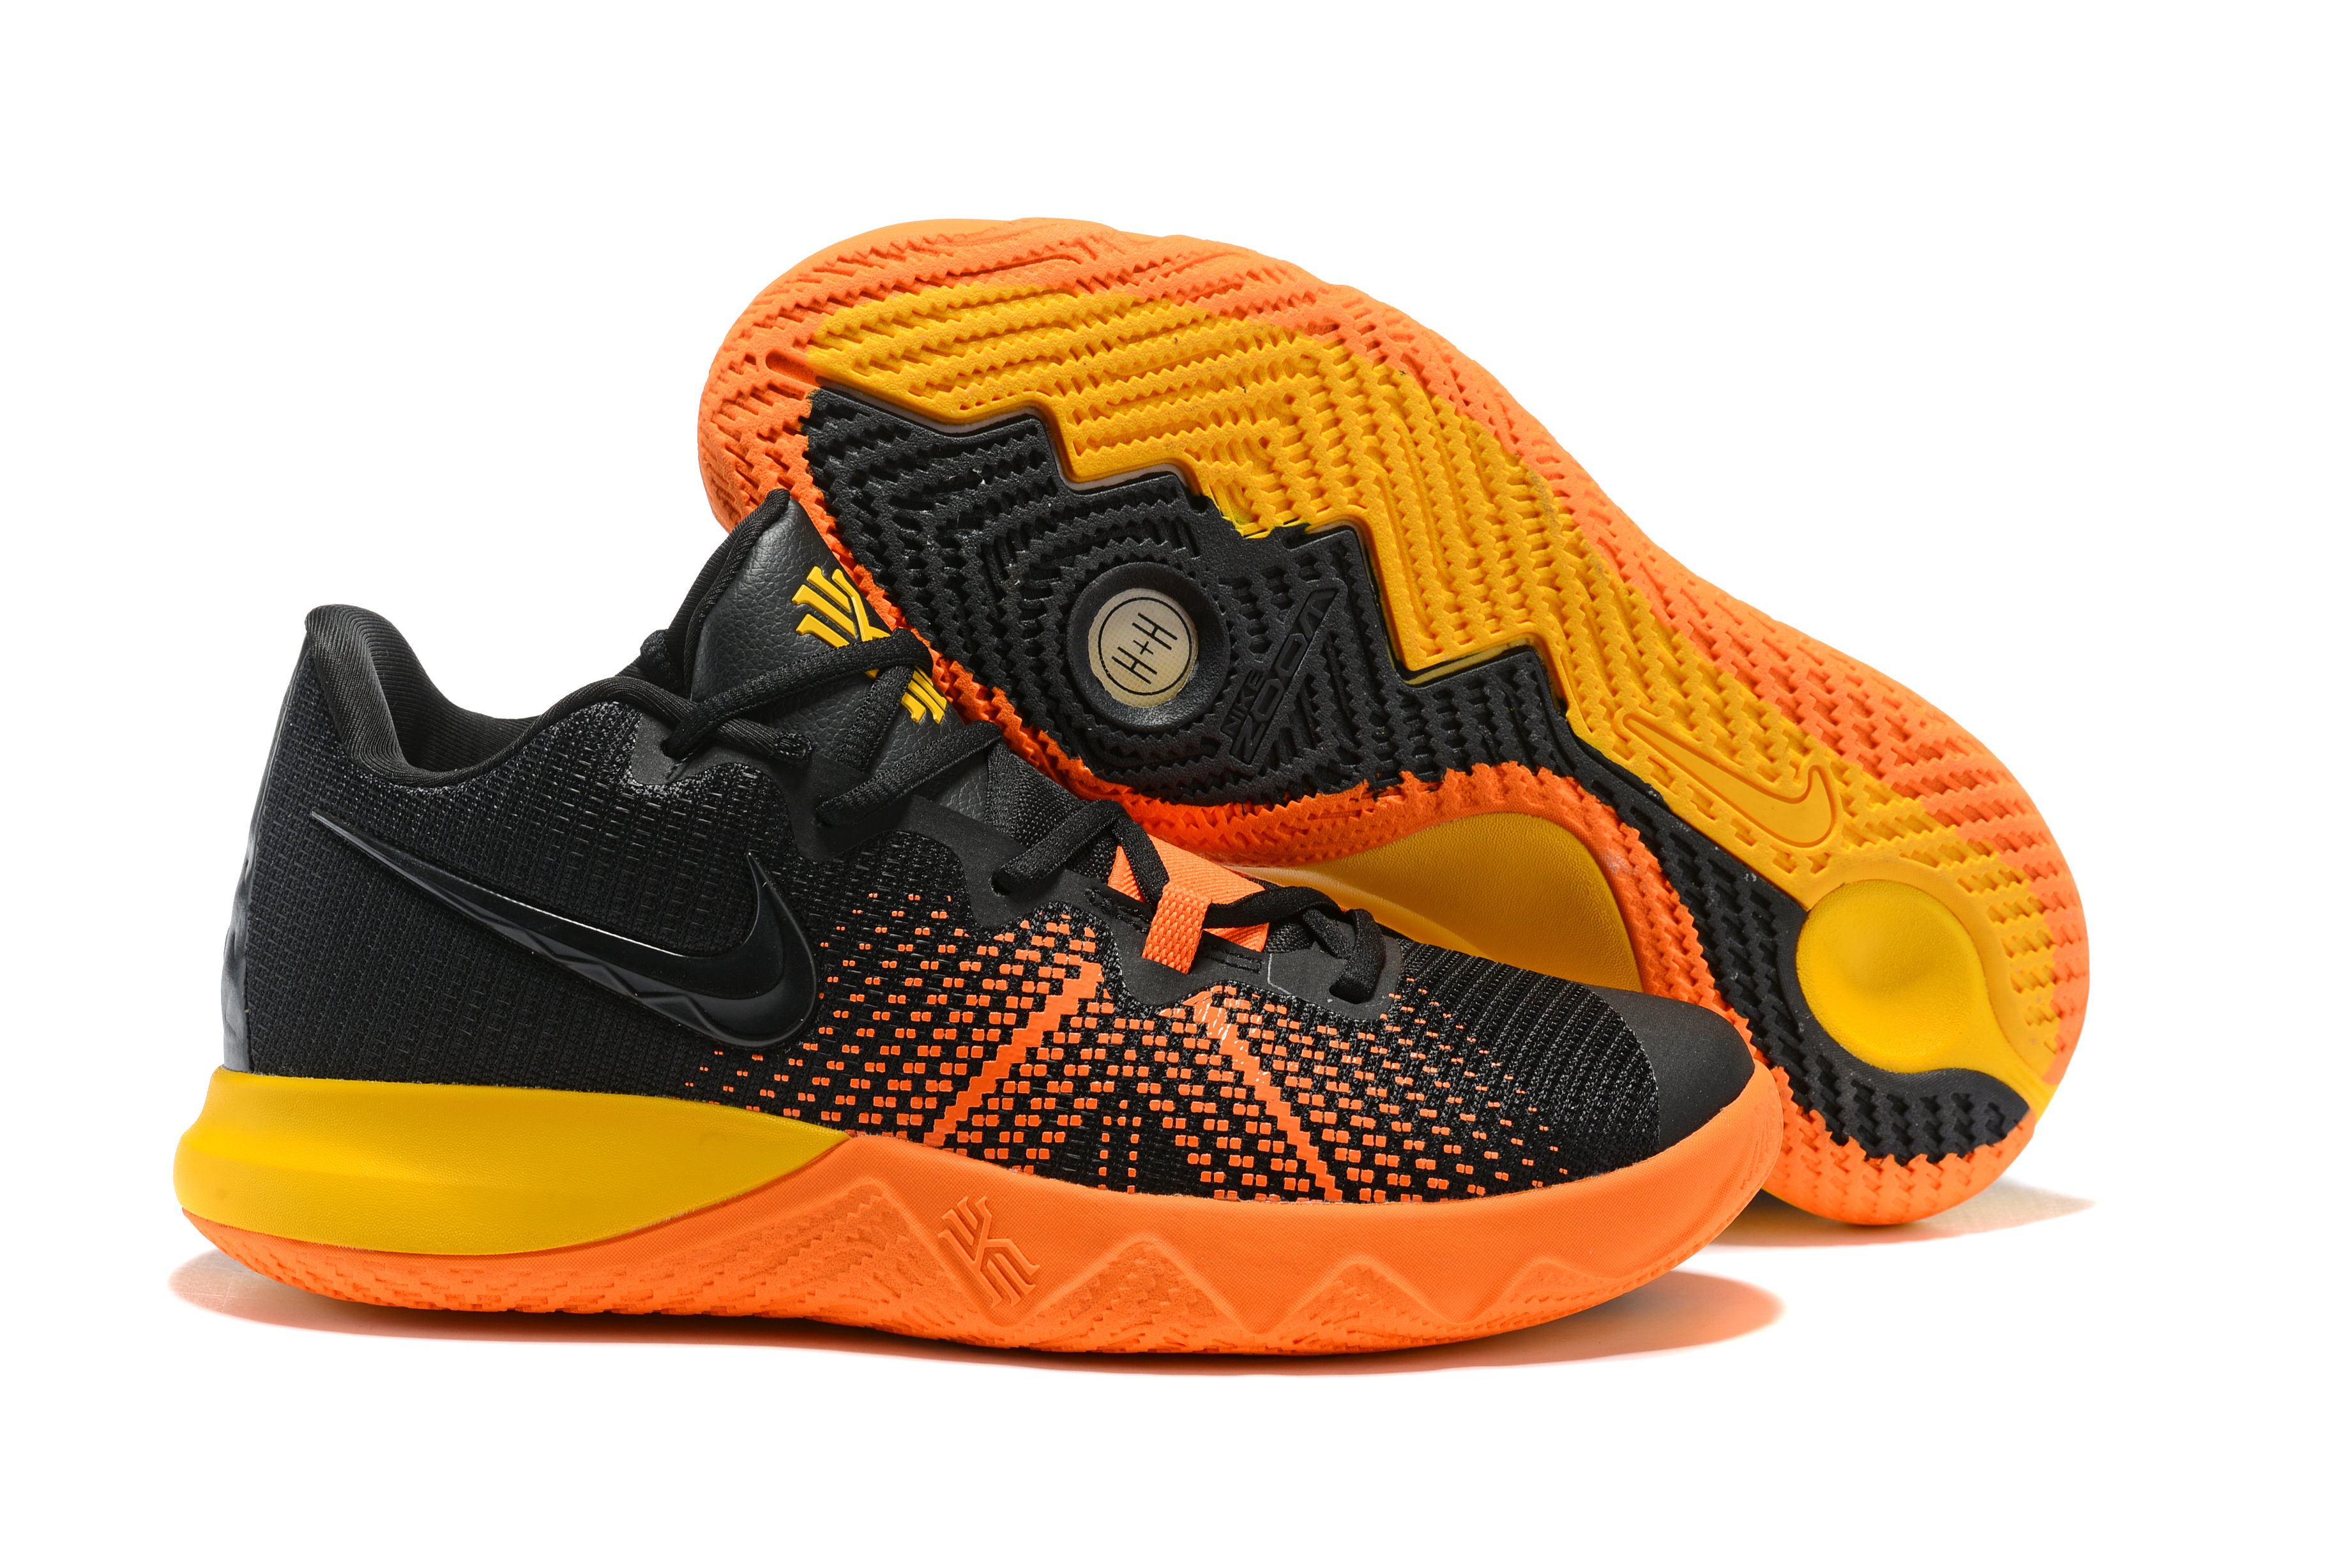 Nike Kyrie Flytrap Black Orange Yellow Shoes